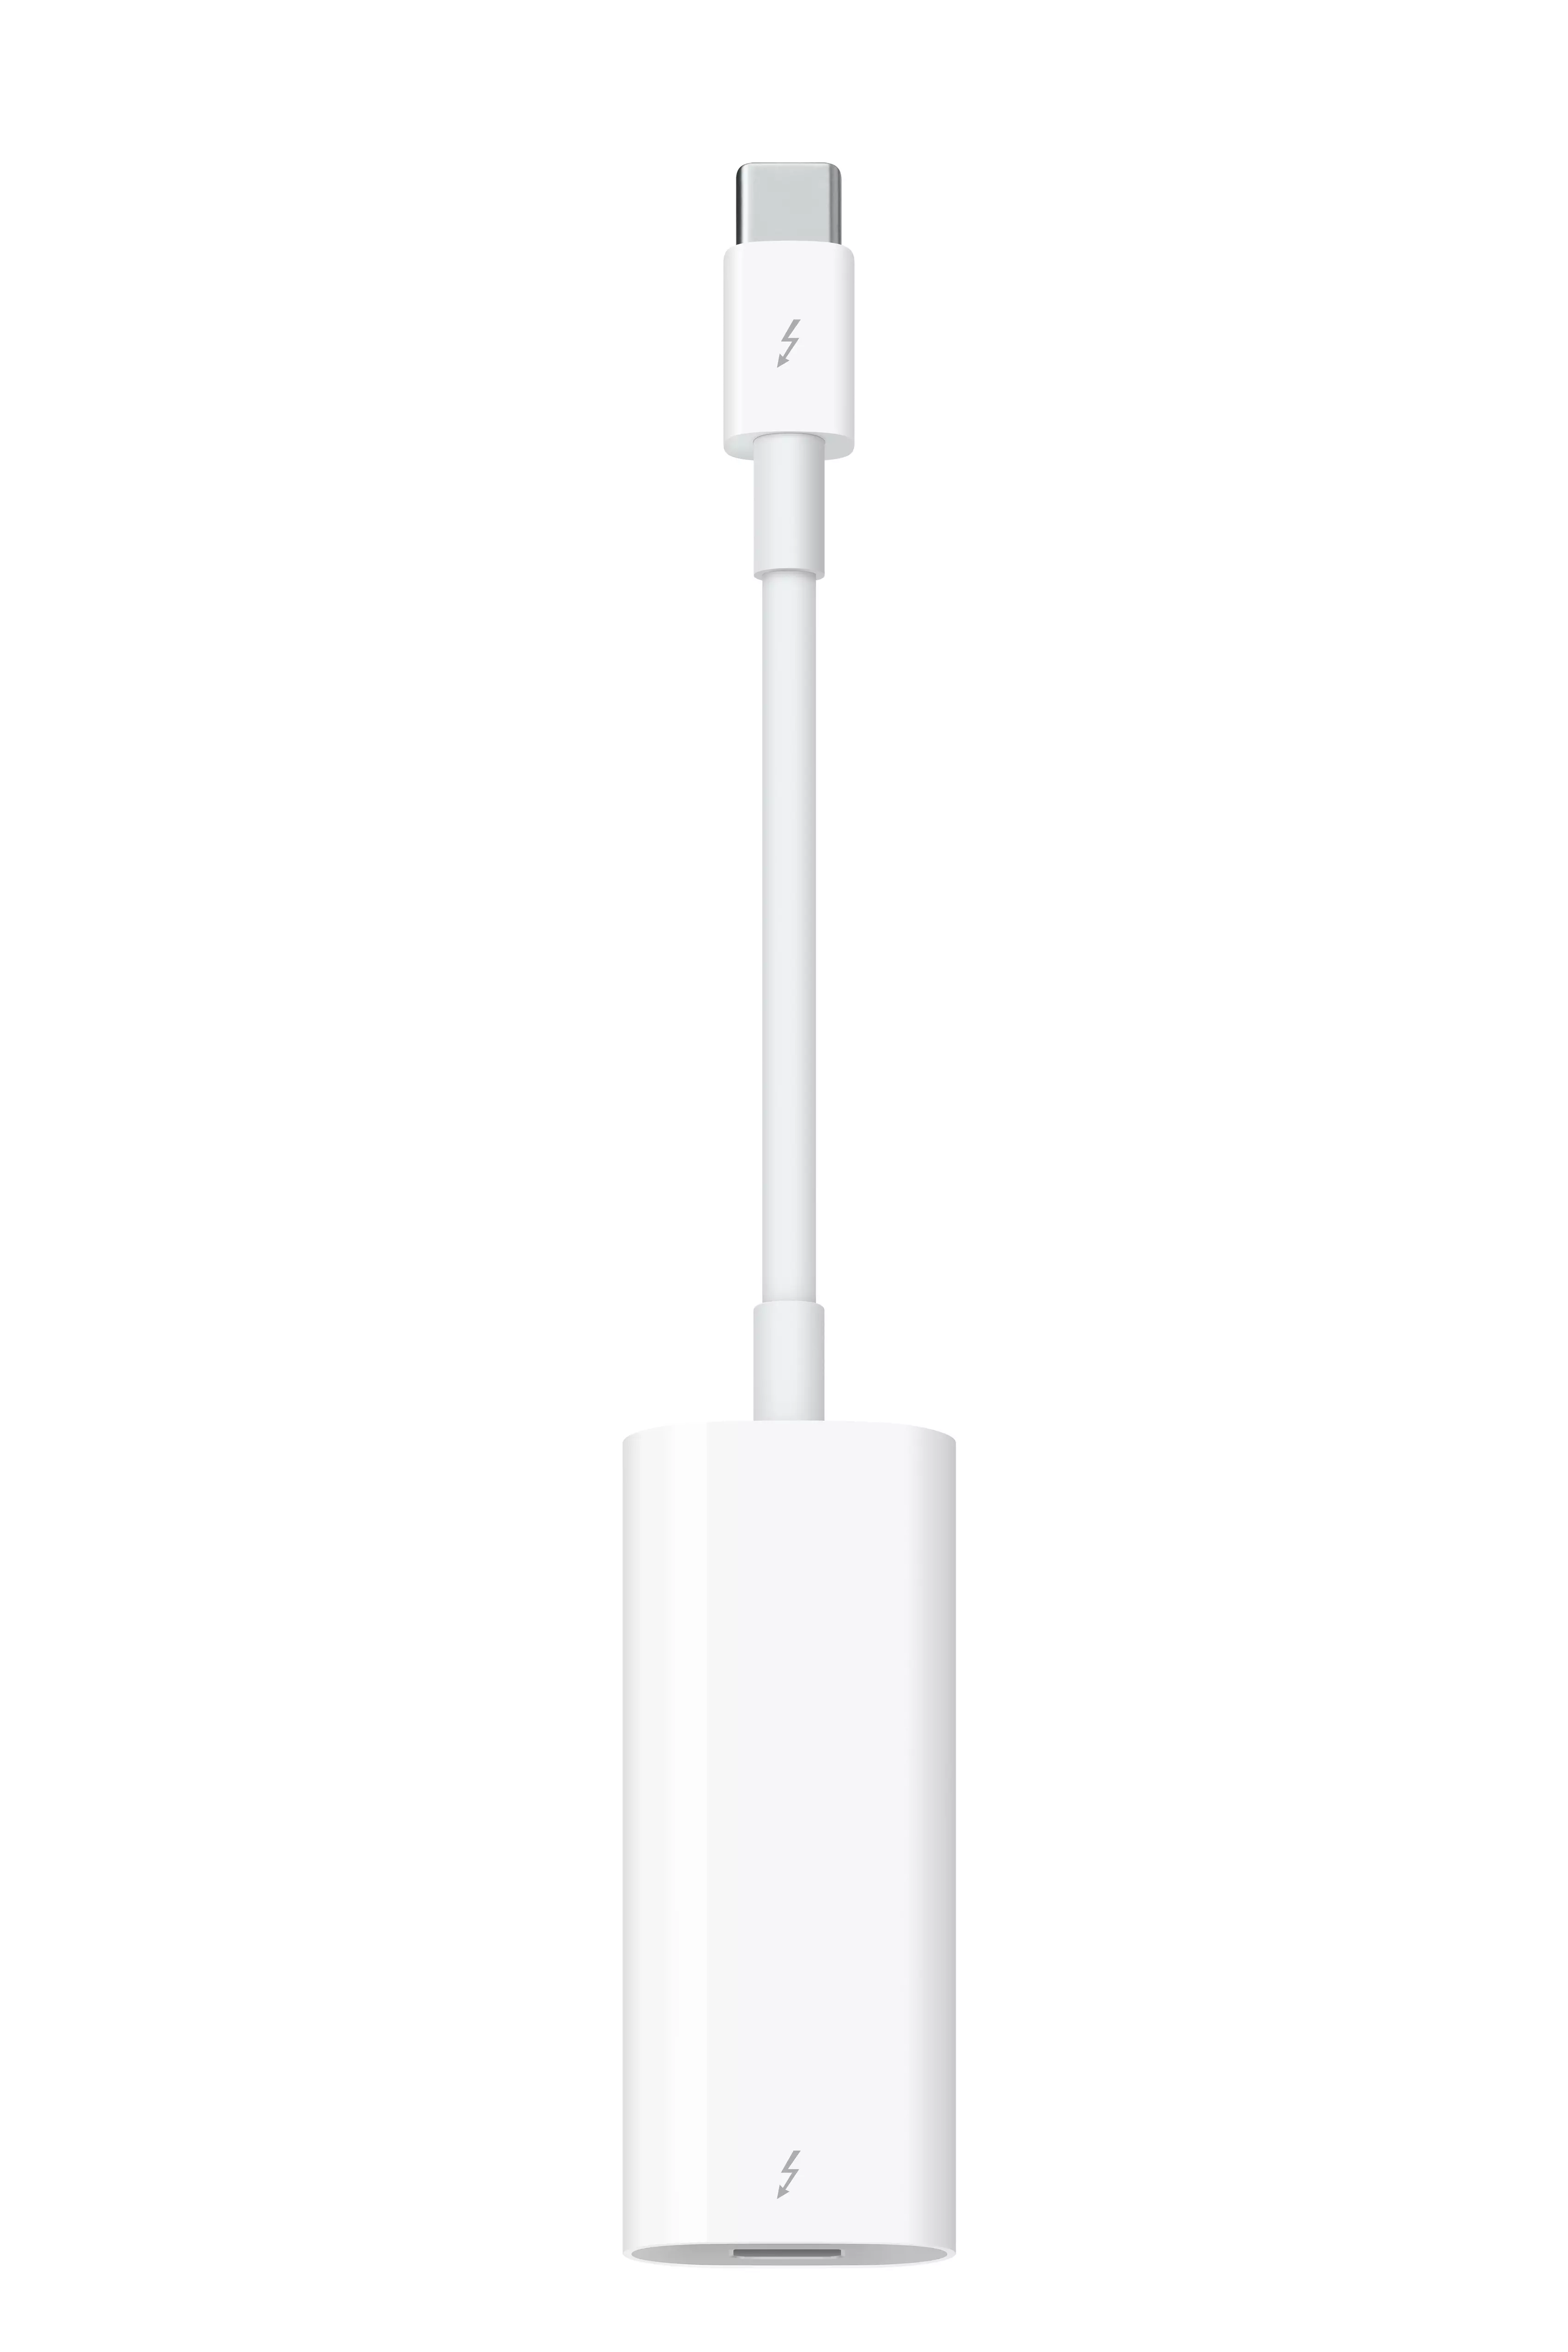 Apple Thunderbolt (Usb C) To Thunderbolt 2 Adapter